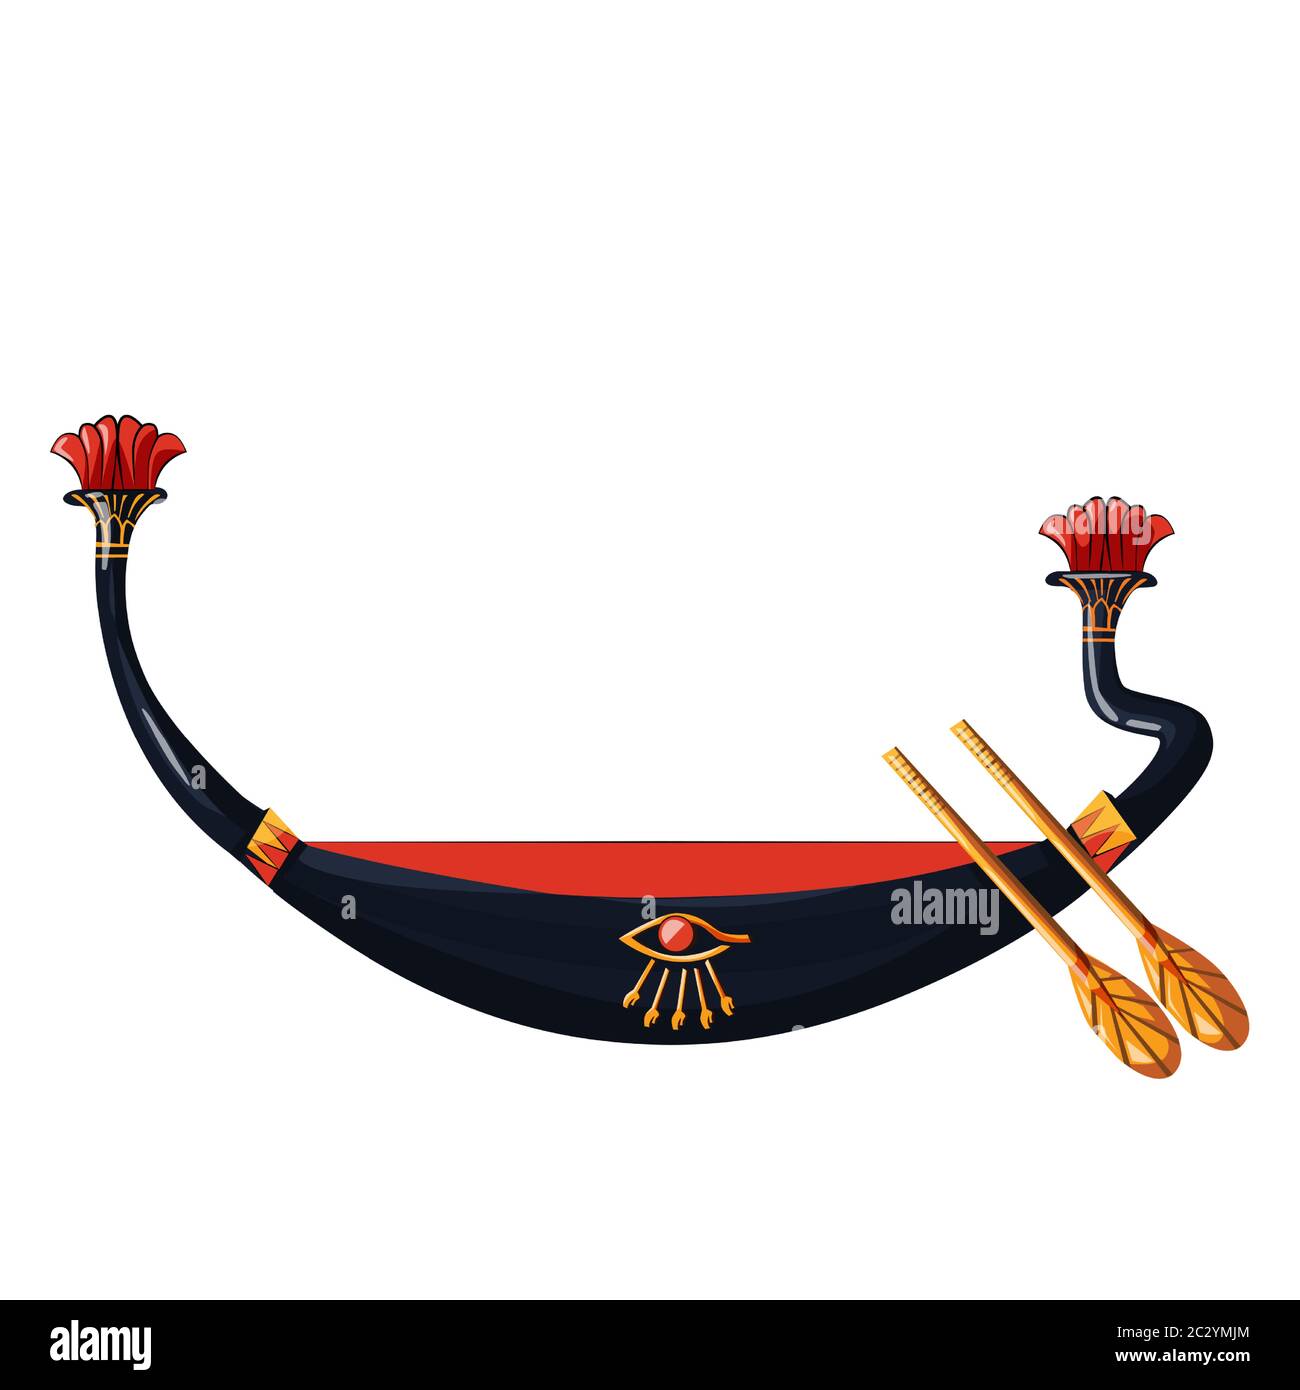 Antico Egitto barca di legno con pagaia per il sole dio viaggio cartoon illustrazione vettoriale. Simbolo religioso della cultura egiziana, barbecue decorato con ruggito per un Illustrazione Vettoriale